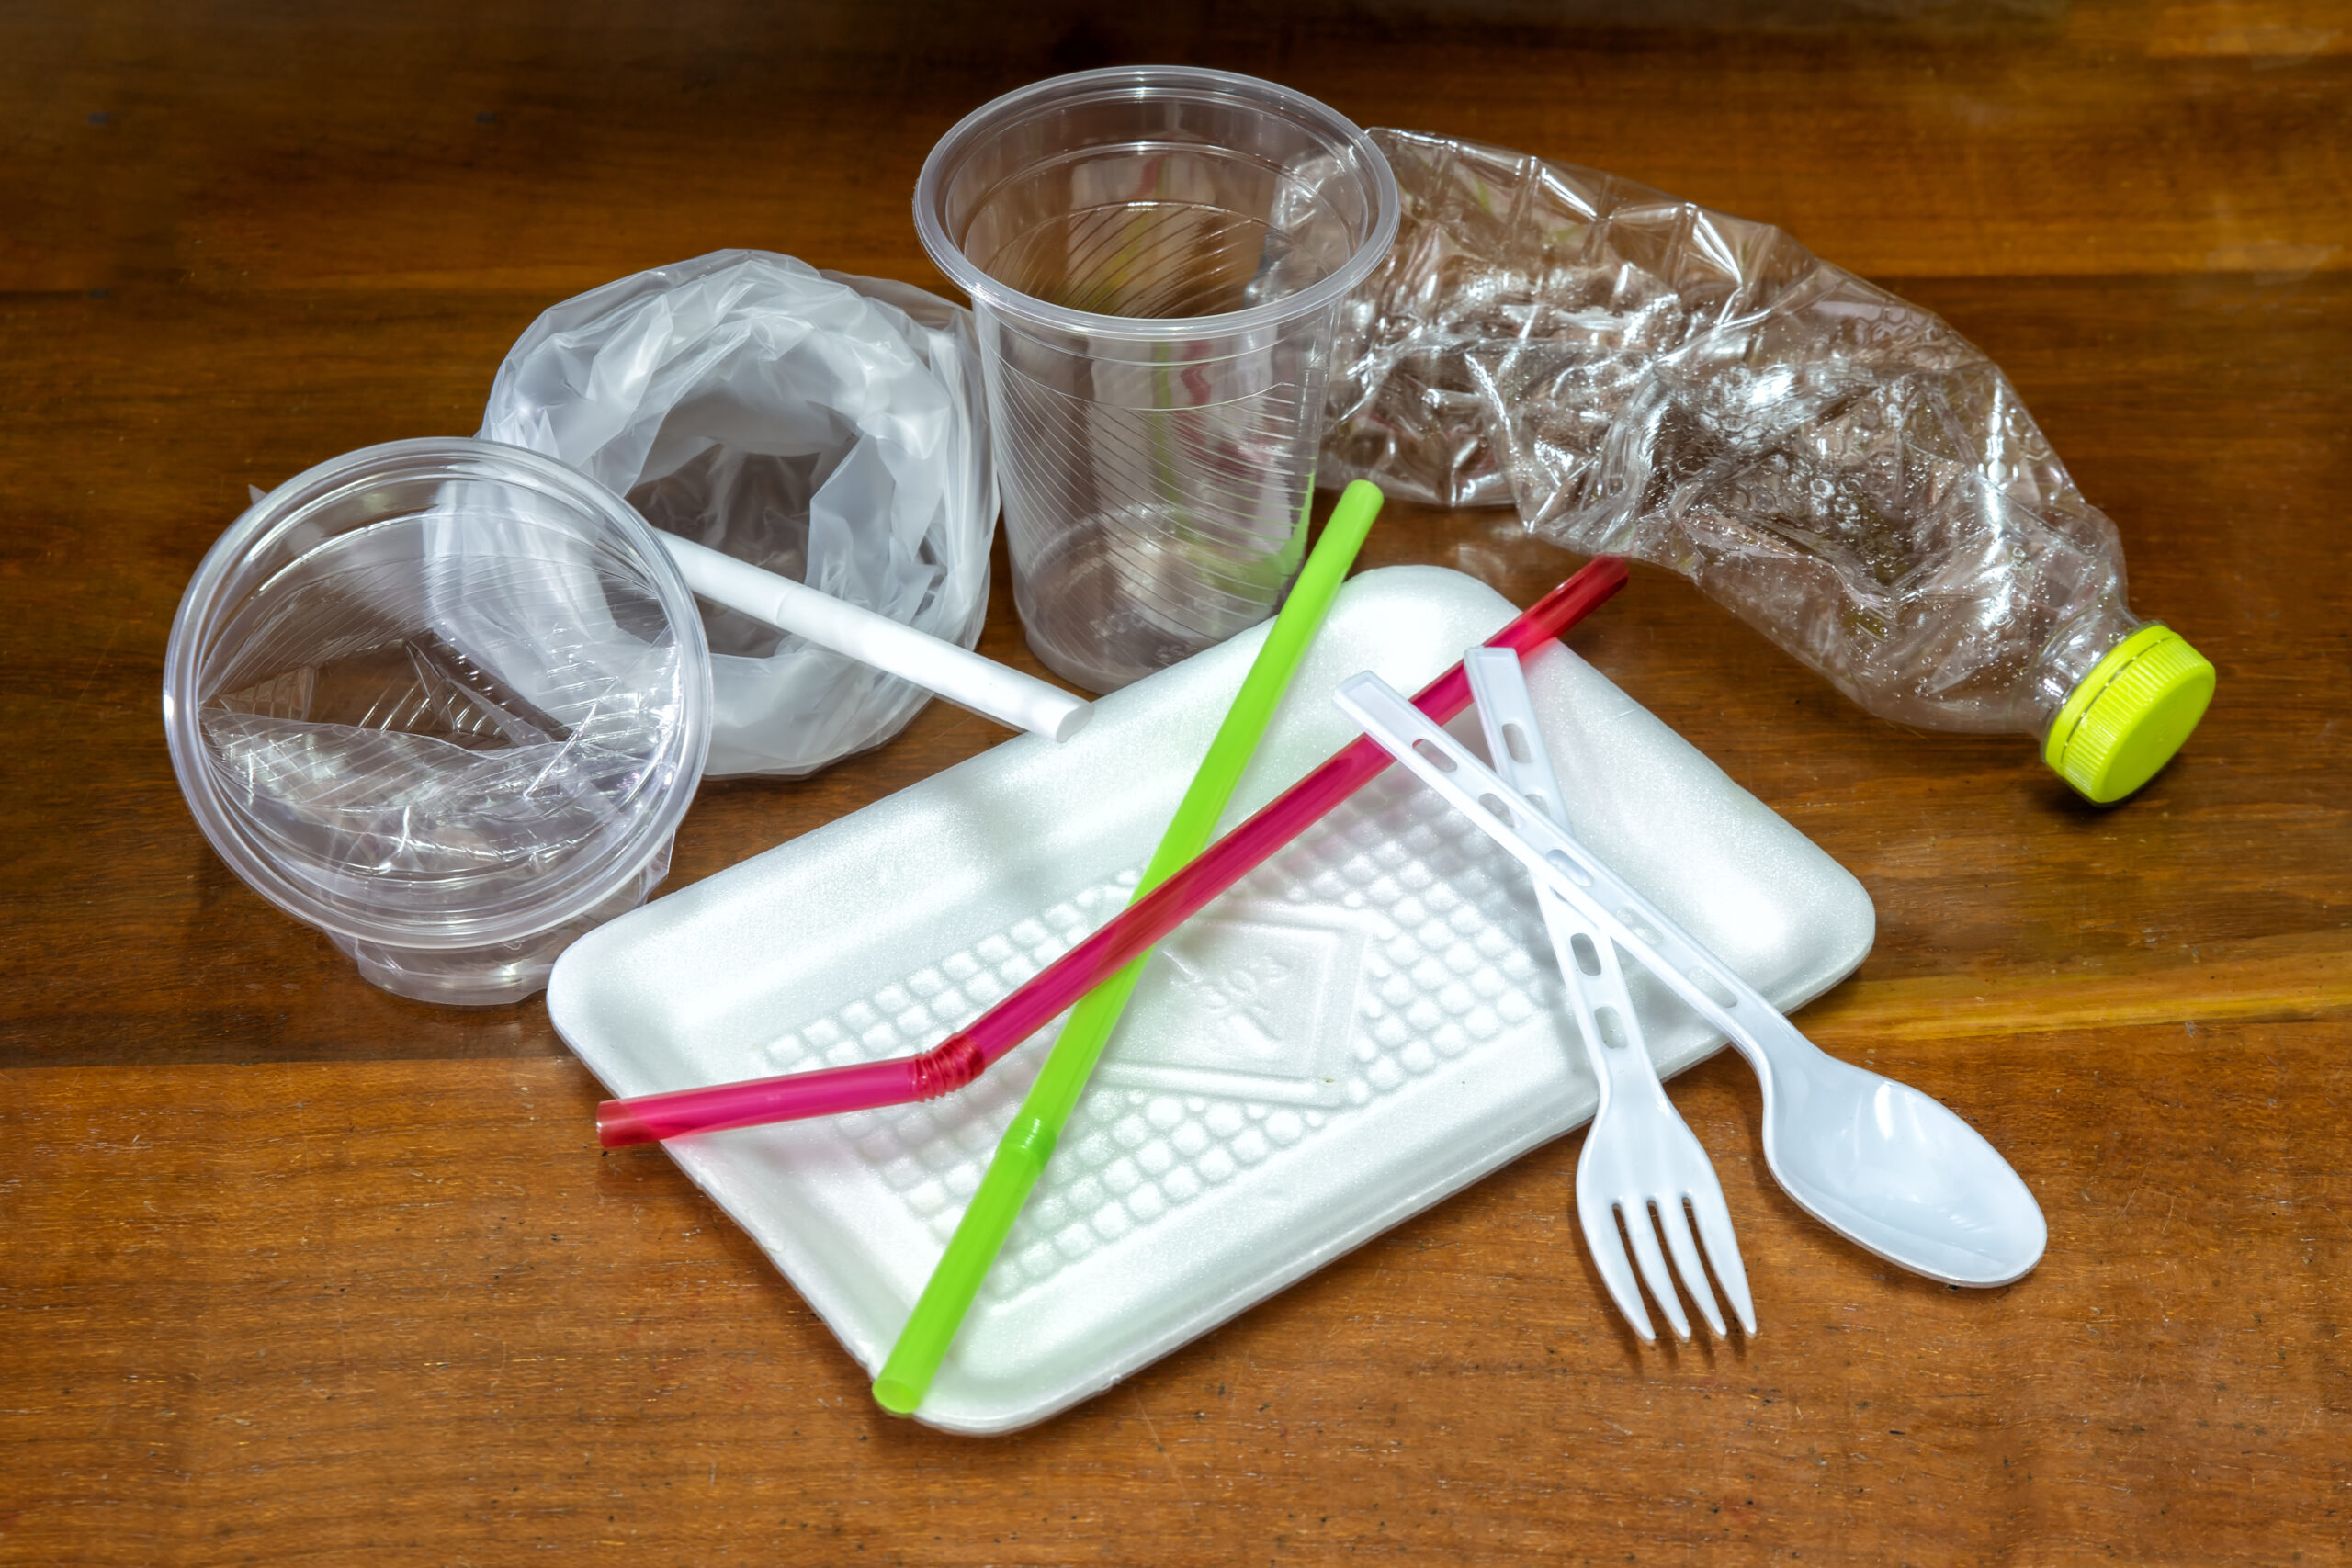 De nouveaux produits en plastique interdits à partir de 2020